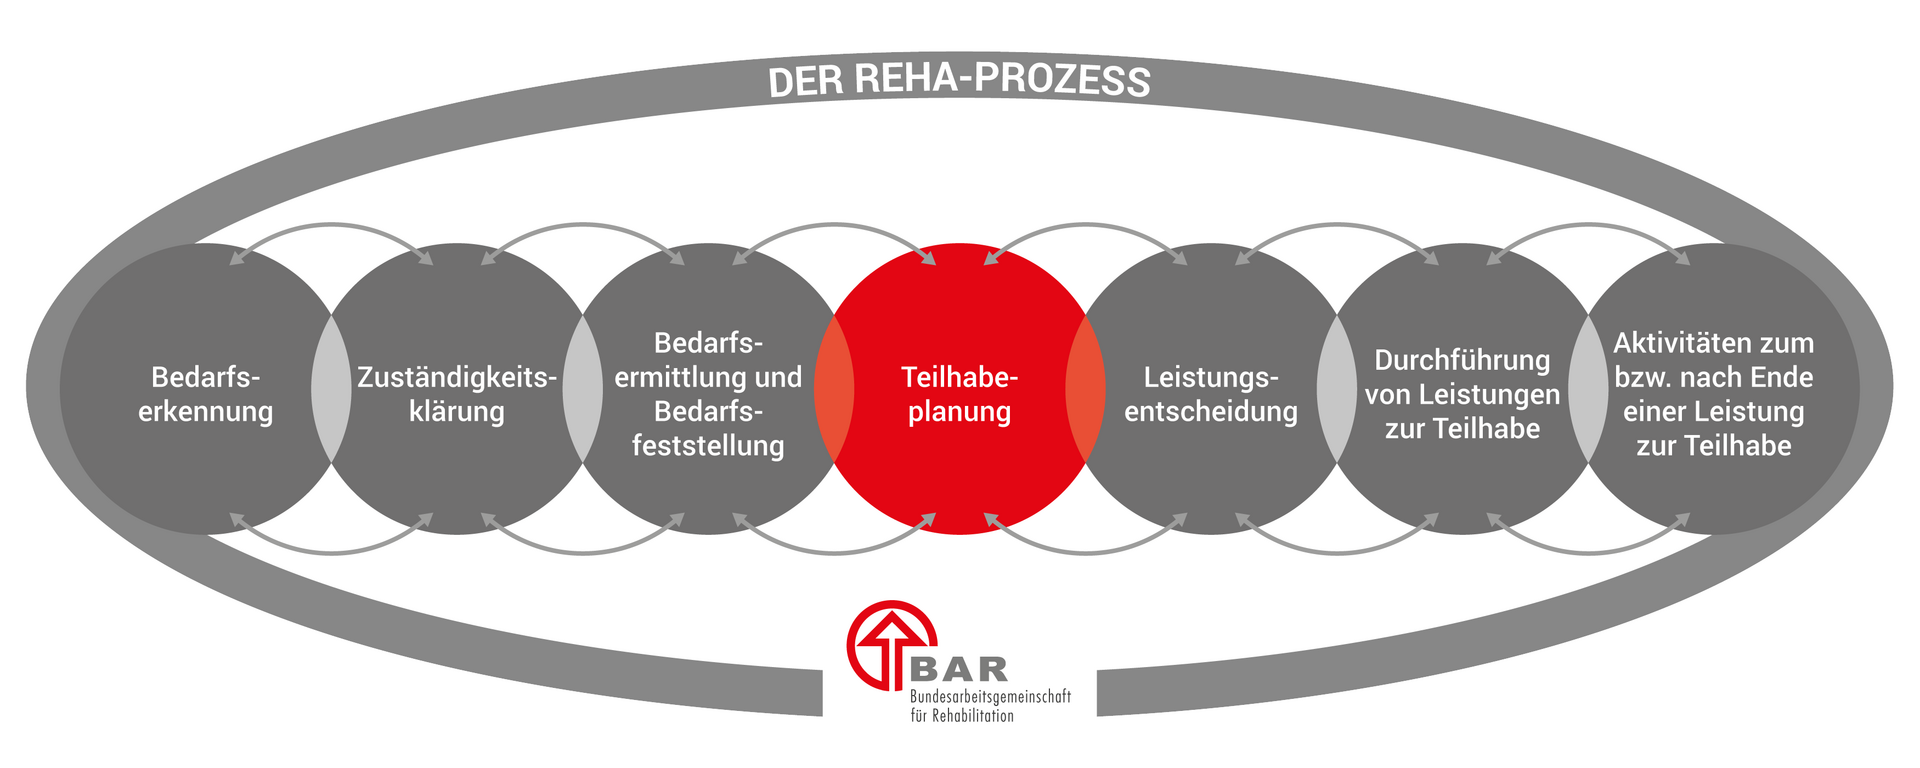 Die sieben Phasen des Reha-Prozesses, dargestellt in sich überlappenden Kreisen: Bedarfserkennung, Zuständigkeitsklärung, Bedarfsermittlung und Bedarfsfeststellung, Teilhabeplanung, Leistungsentscheidung, Durchführung von Leistungen zur Teilhabe und Aktivitäten zum bzw. nach Ende einer Leistung. Hervorgehoben ist die Phase der Teilhabeplanung. Die Überschrift lautet „Der Reha-Prozess“ und unten befindet sich das Logo der BAR.